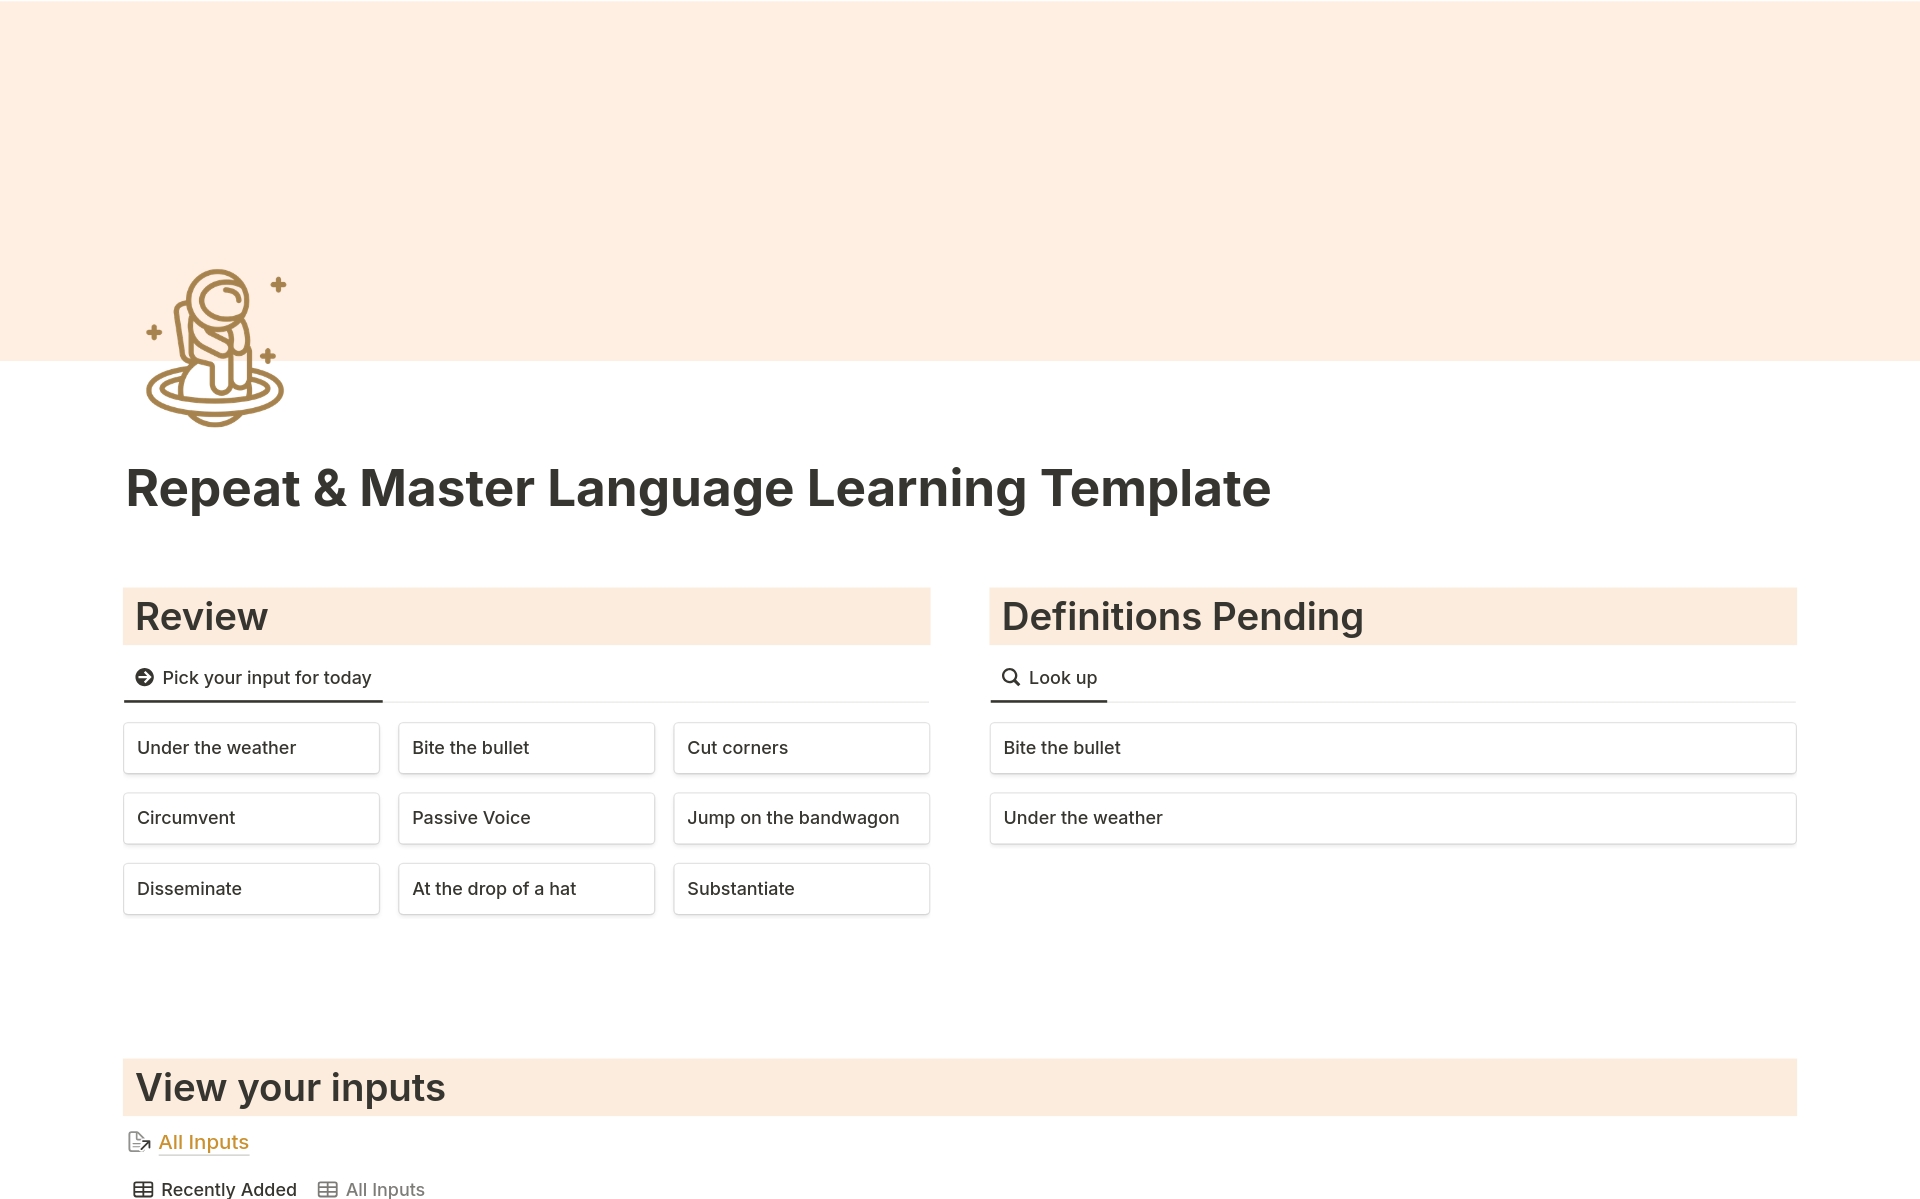 Uma prévia do modelo para Repeat & Master Language Learning